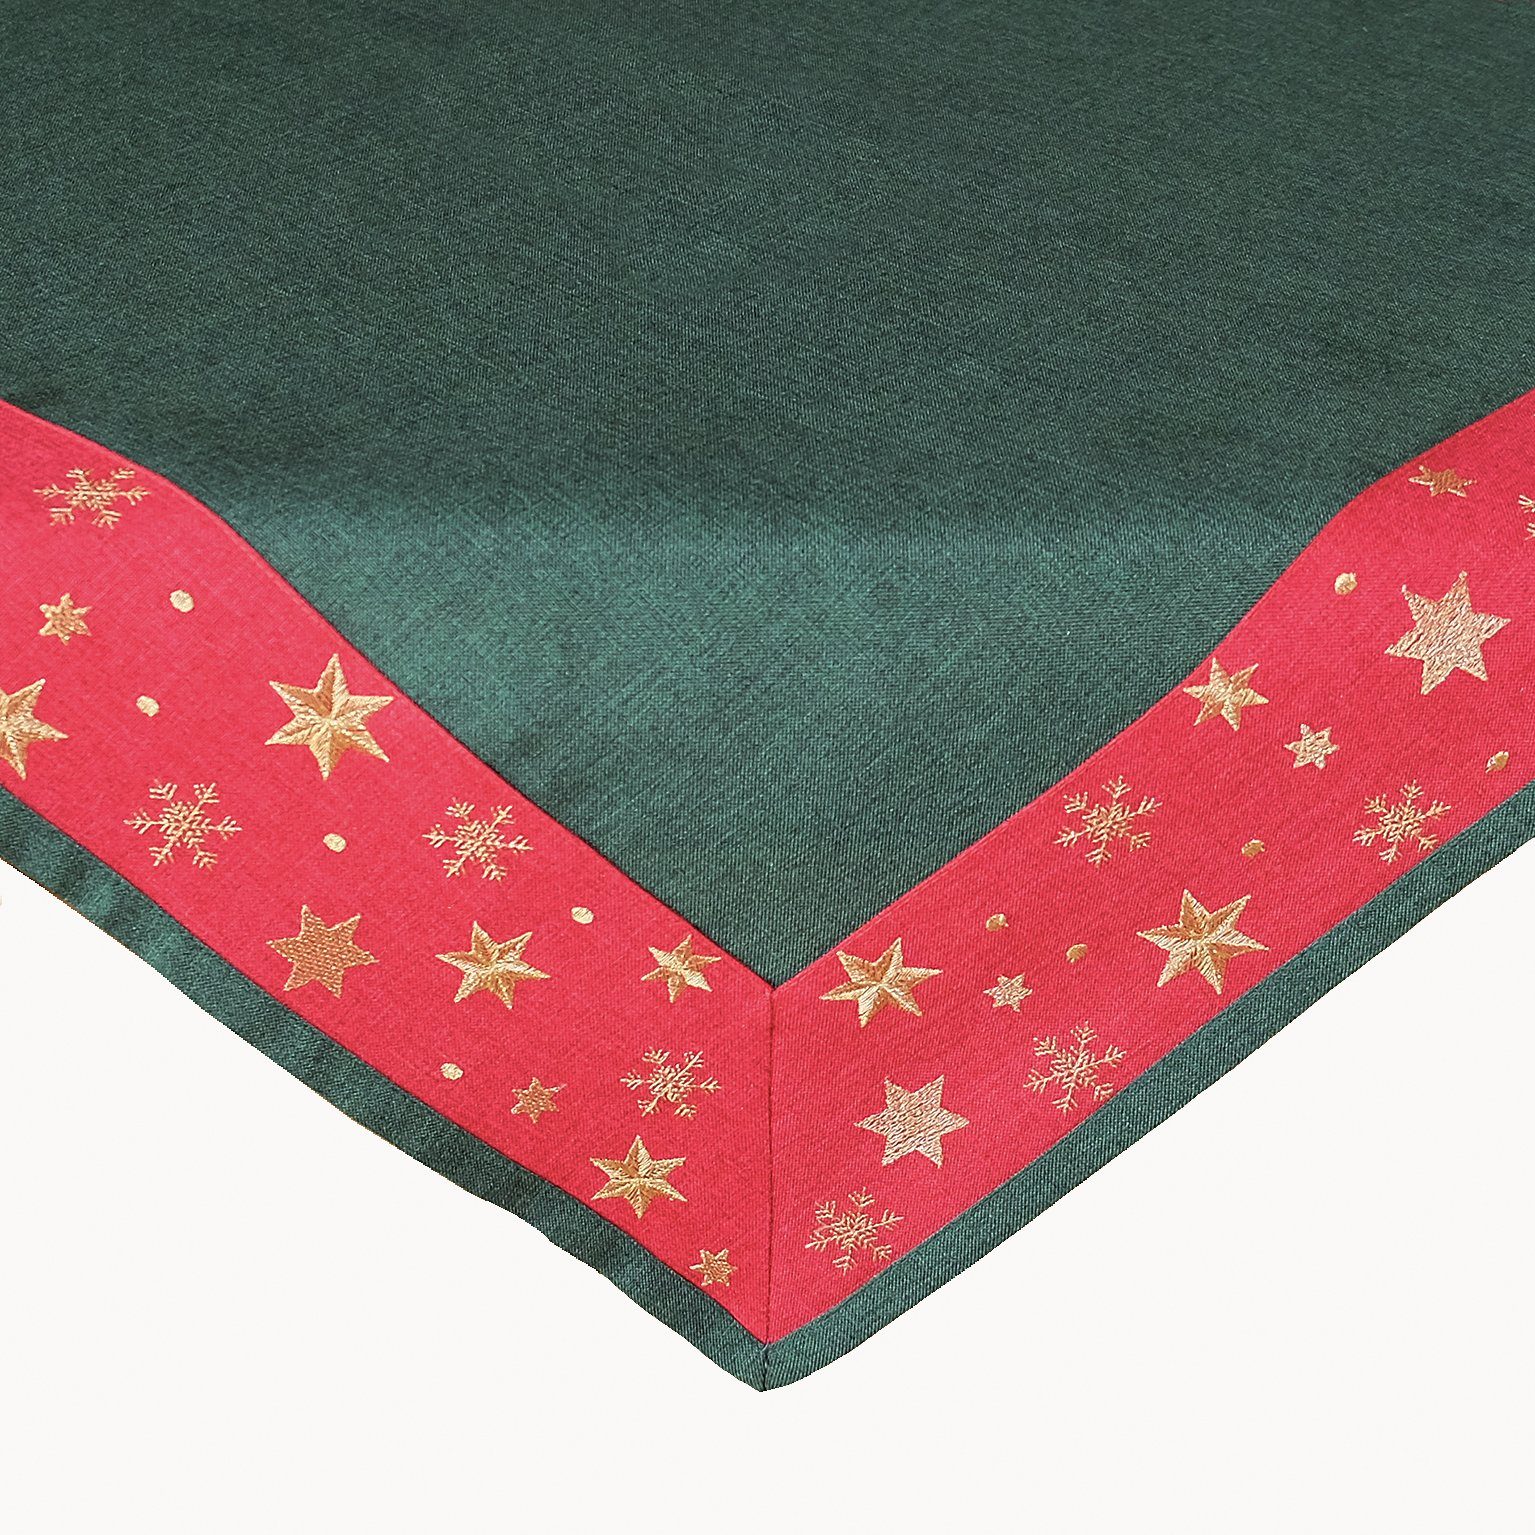 Raebel Tischdecke Stickerei goldene Sterne Weihnachten, bestickt grün